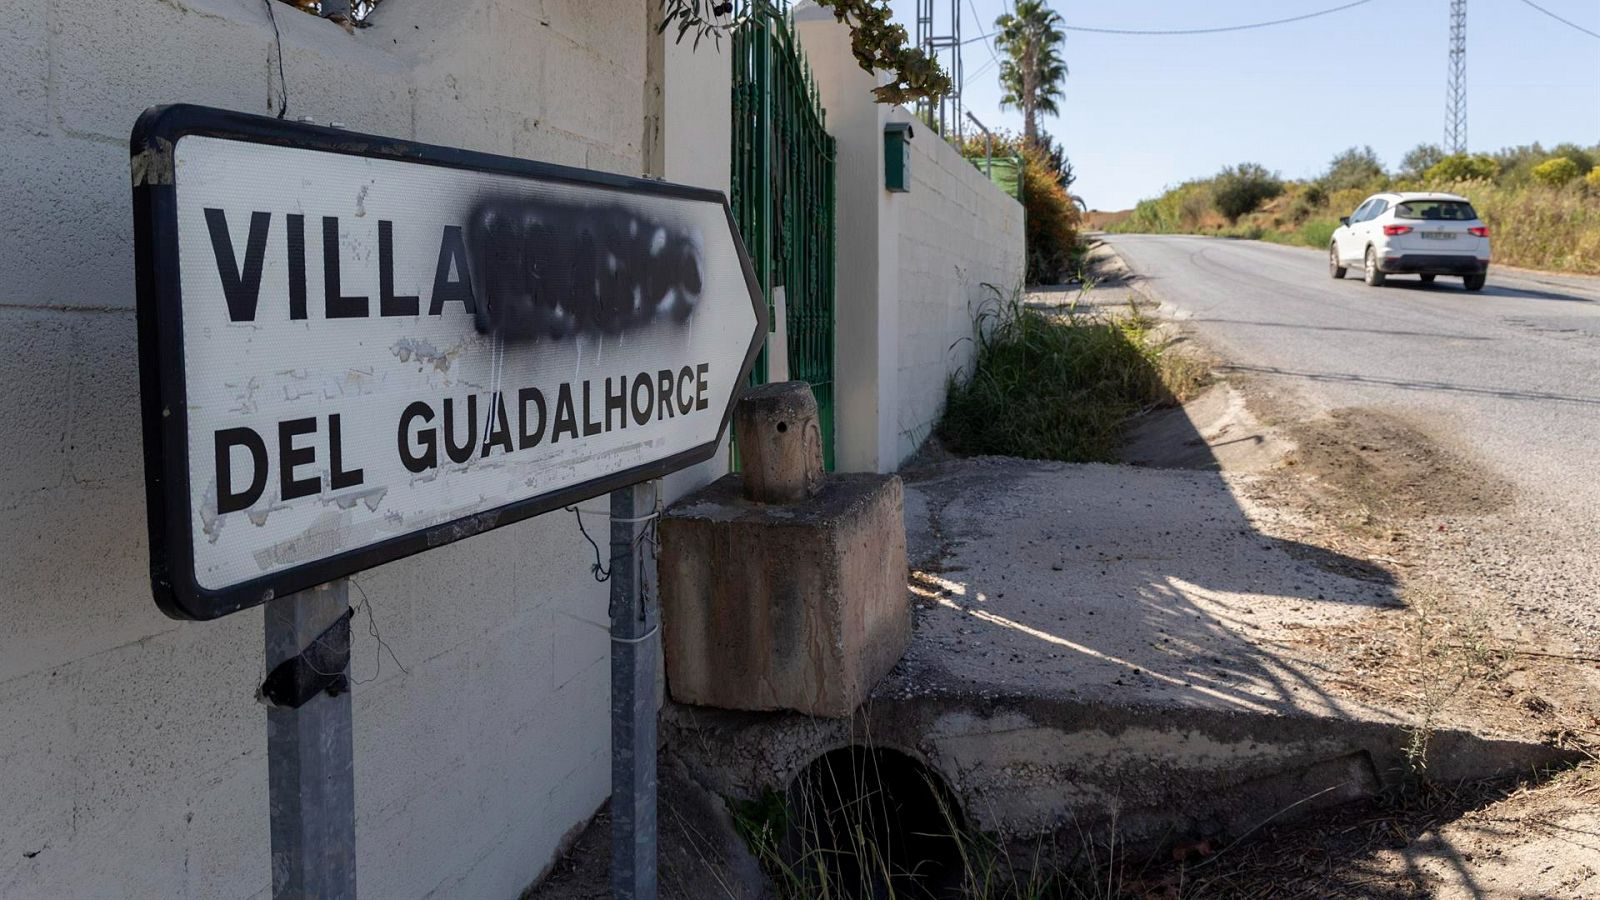 Ocho localidades españolas deberían cambiar su nombre